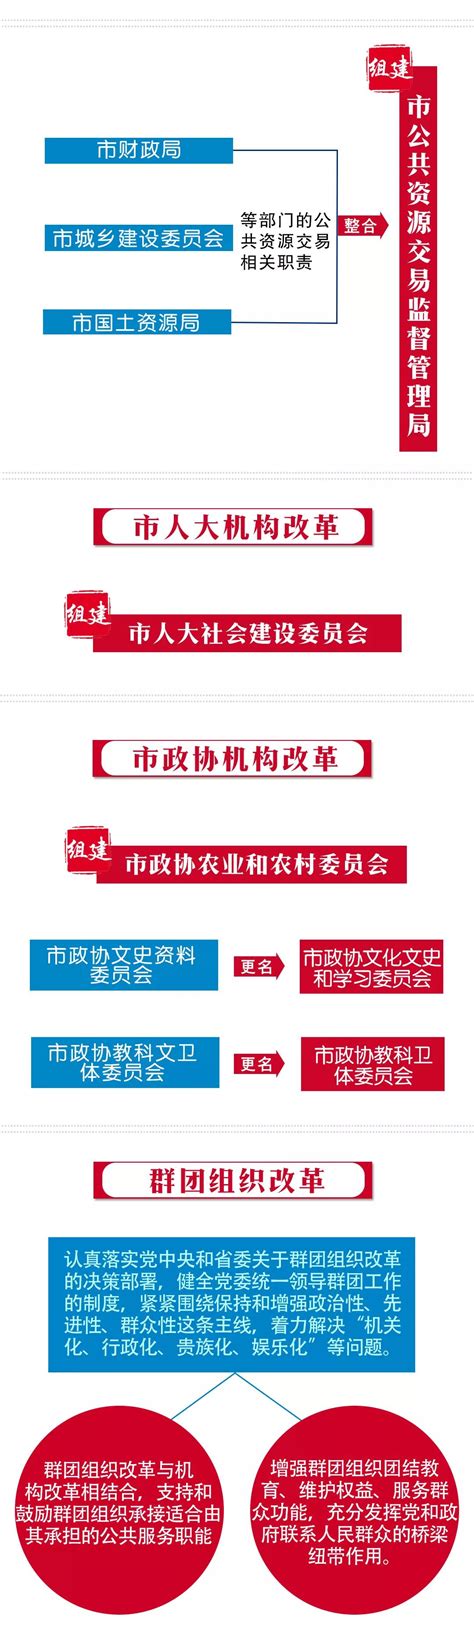 淮南市机构改革方案公布_安徽频道_凤凰网